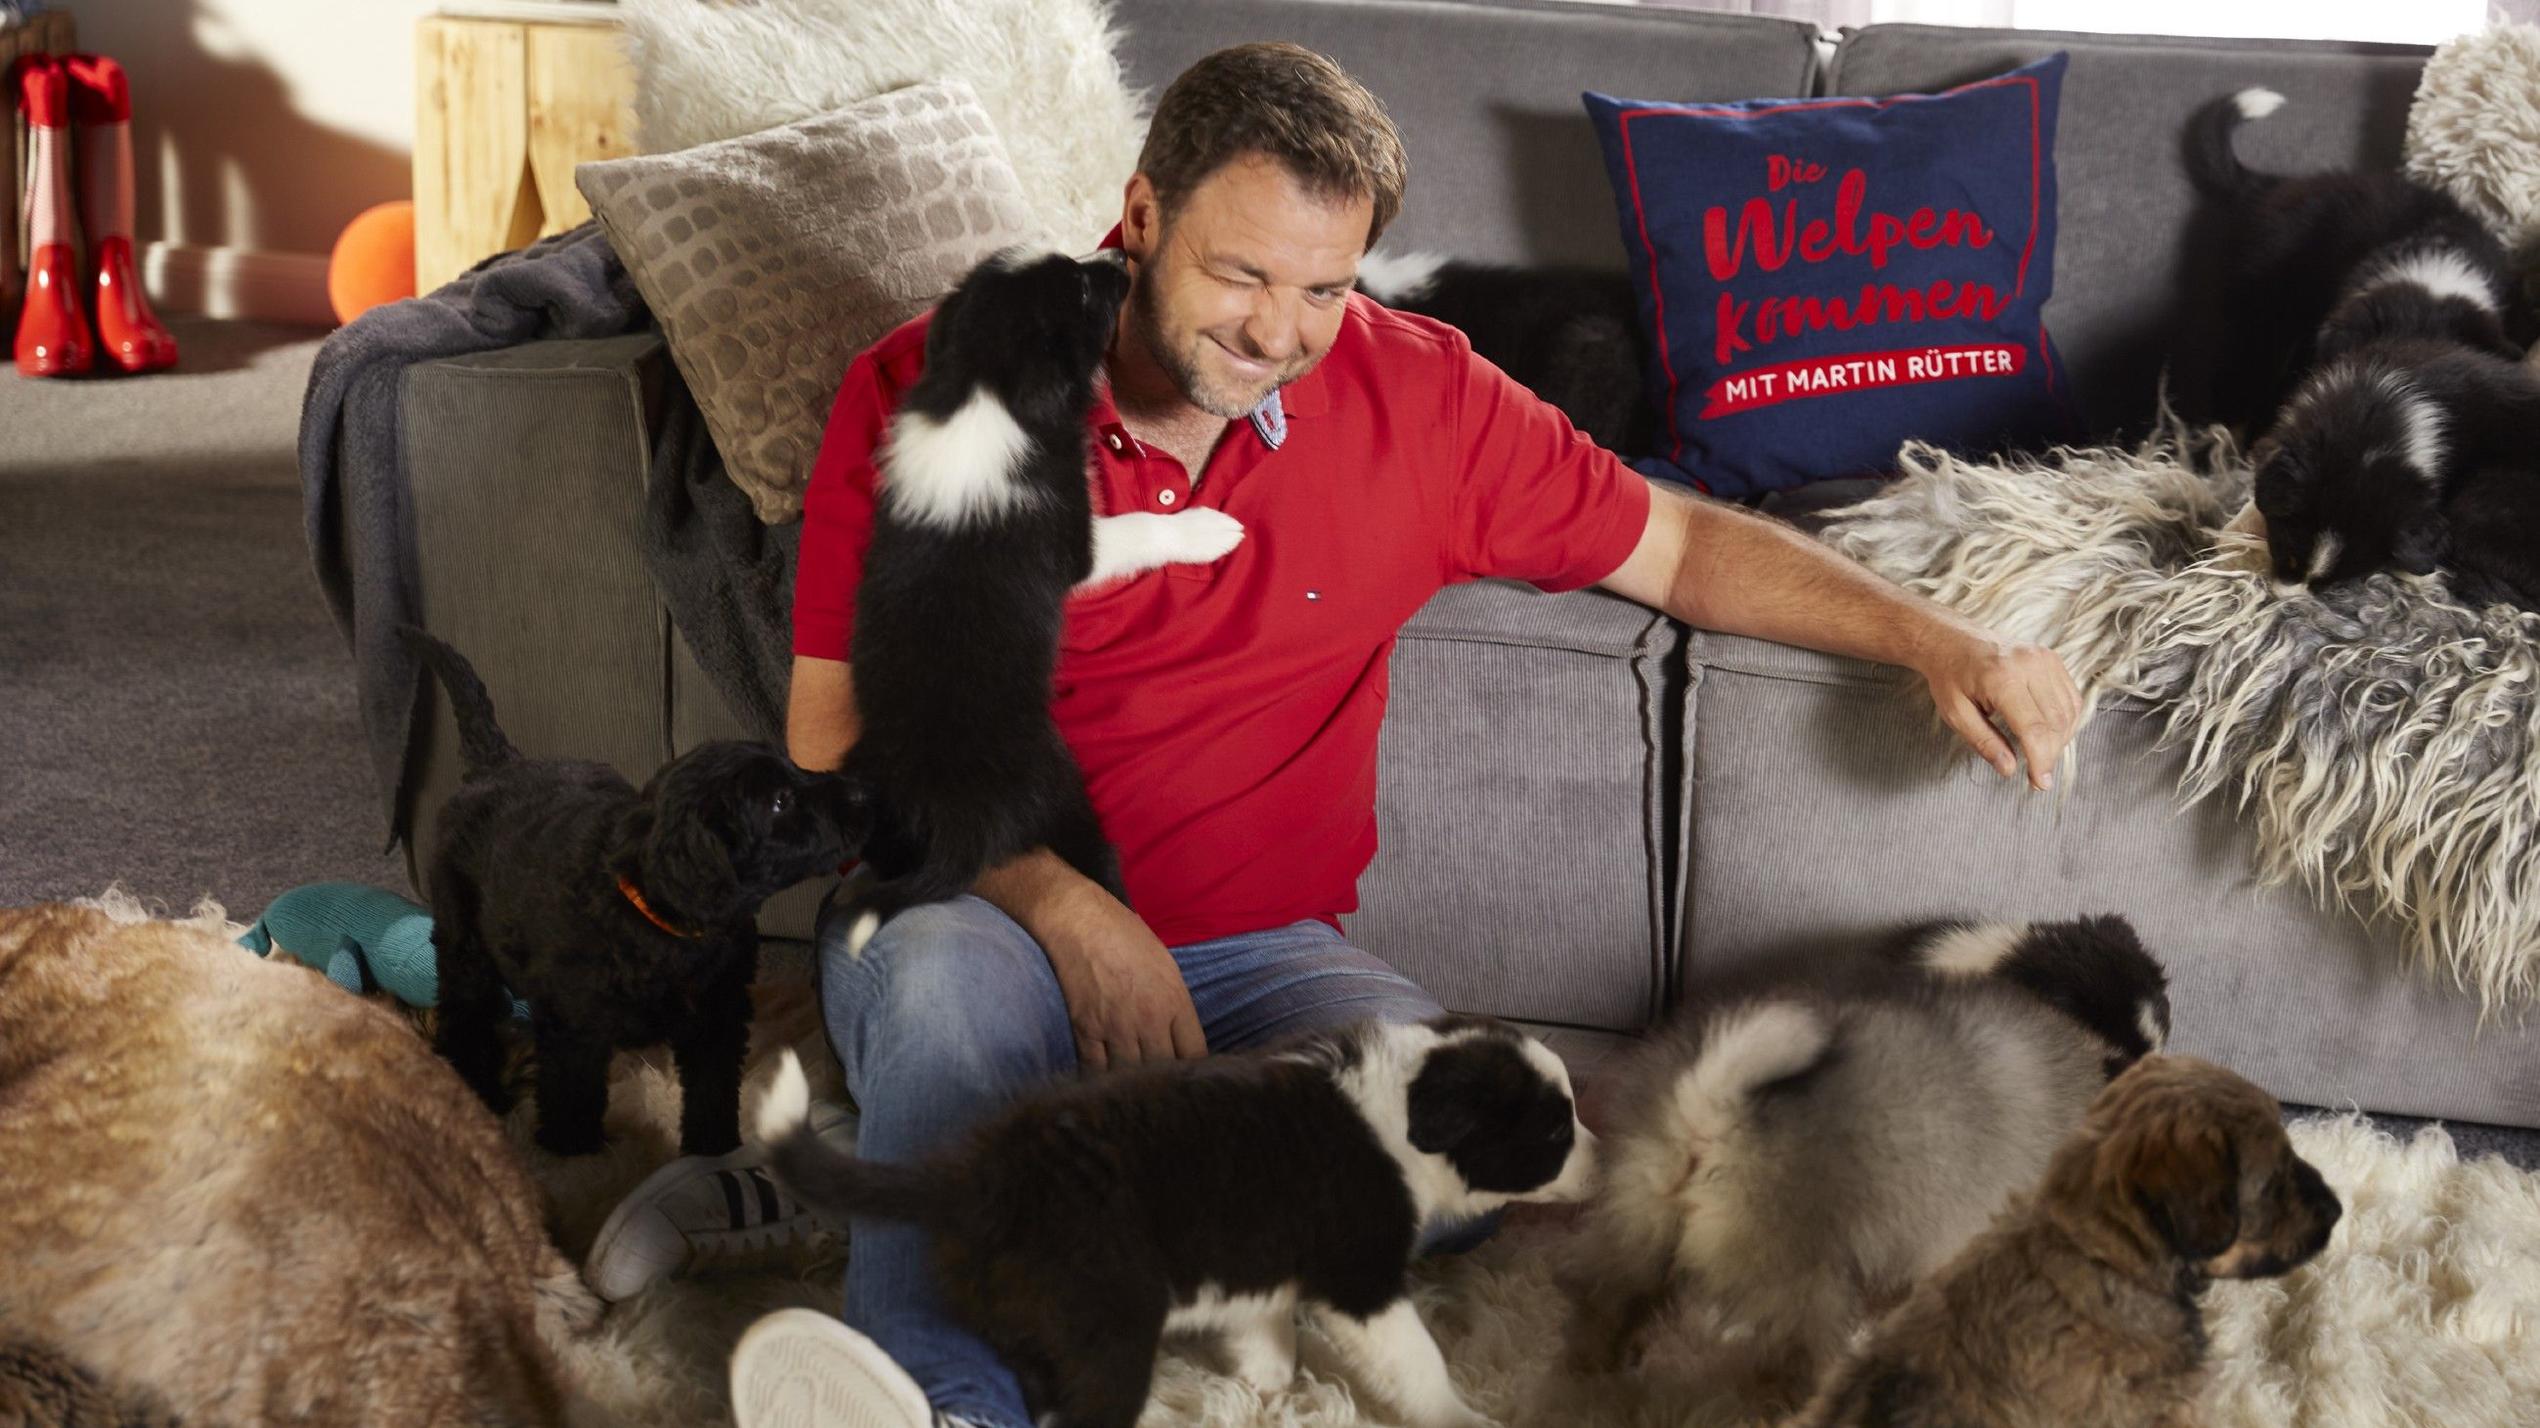 An Weihnachten gehören Hunde für Martin Rütter zum Fest dazu - inklusive Geschenk für die Vierbeiner.